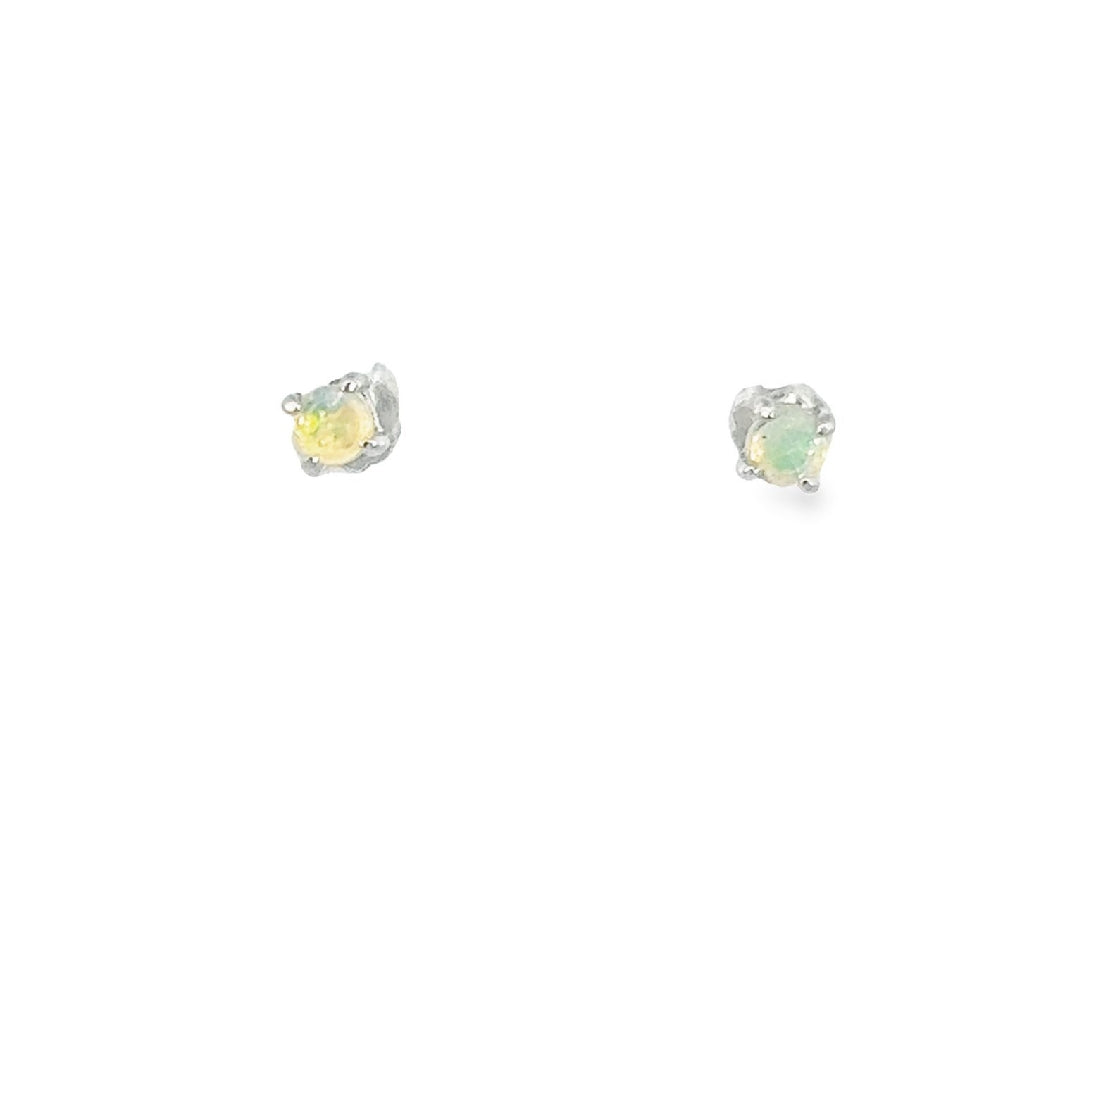 Sterling Silver 3mm Crystal Opal earrings 4 claw set - Masterpiece Jewellery Opal & Gems Sydney Australia | Online Shop